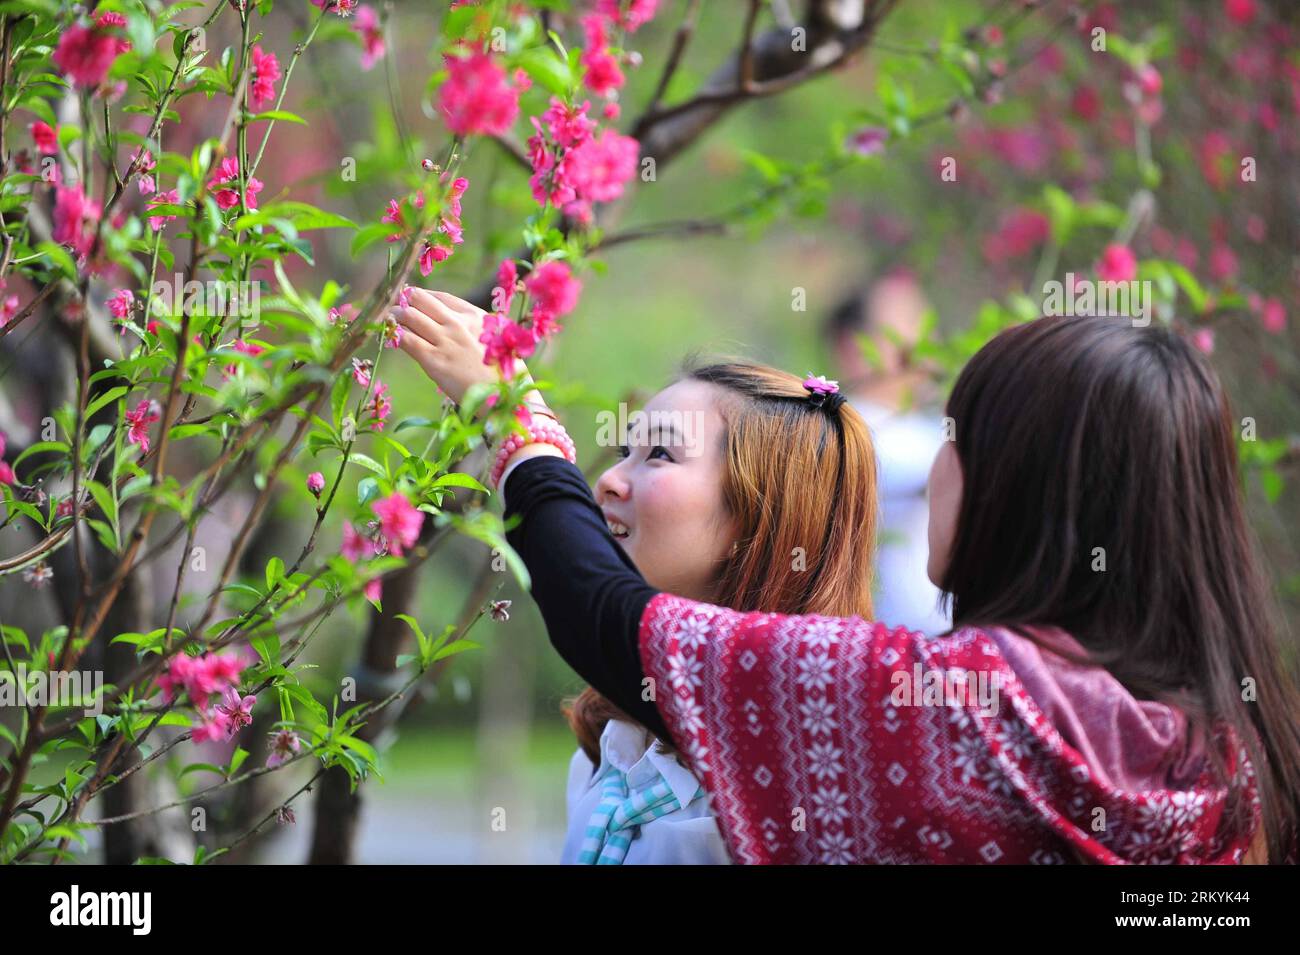 Bildnummer : 59234709 Datum : 18.02.2013 Copyright : imago/Xinhua (130218) -- GUANGZHOU, 18 février 2013 (Xinhua) -- deux filles observent des fleurs de pêche à la montagne Baiyun à Guangzhou, capitale de la province du Guangdong du sud de la Chine, 18 février 2013. Les fleurs de pêche à Taohuajian de la montagne ont fleuri et ont attiré de nombreux visiteurs. (Xinhua/Chen Yehua) (zkr) CHINA-GUANGZHOU-PEACH BLOSSOM(CN) PUBLICATIONxNOTxINxCHN Gesellschaft Pflanze Blüte Pfirsichblüte Park Besucher x0x xdd 2013 quer 59234709 Date 18 02 2013 Copyright Imago XINHUA Guangzhou février 18 2013 XINHUA deux filles regarder les fleurs de pêche À Bai Banque D'Images